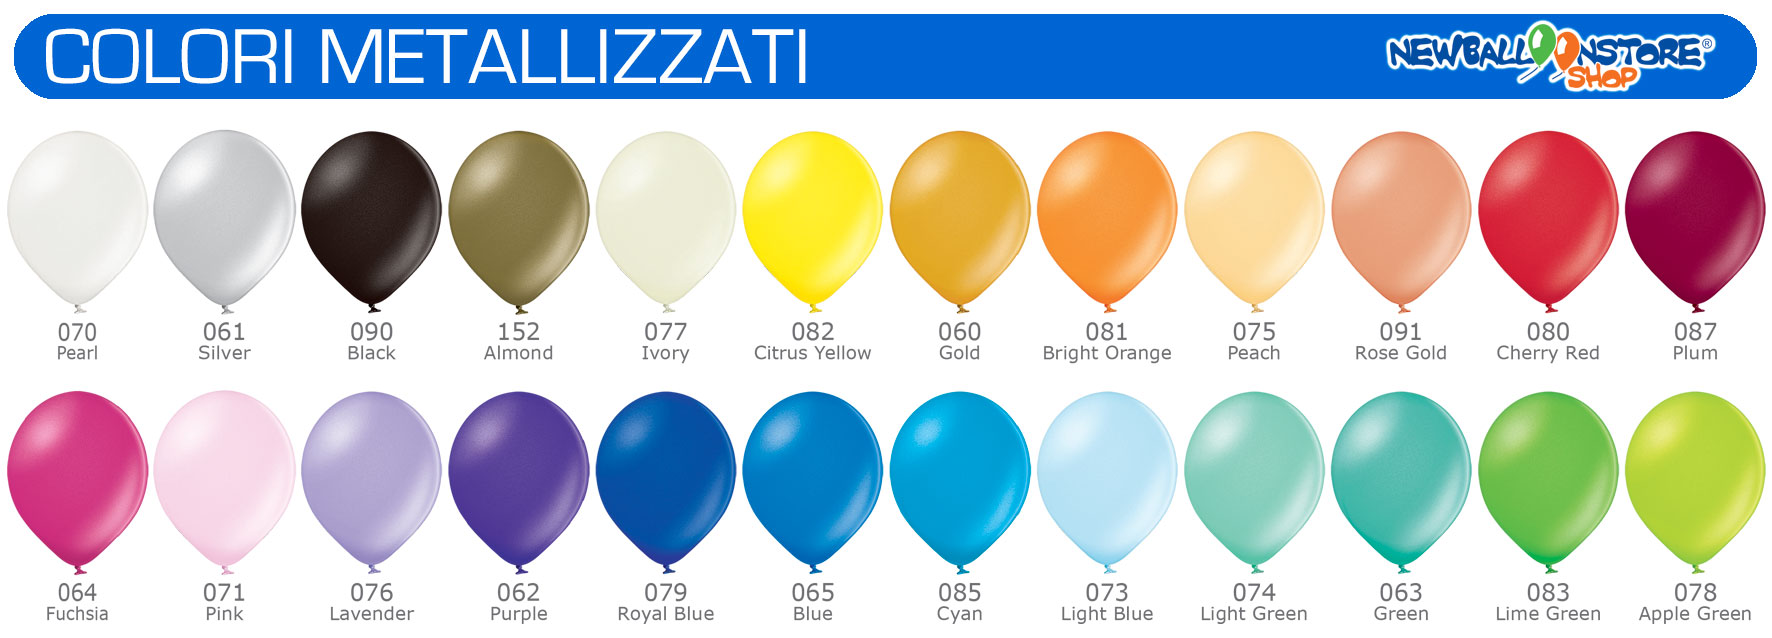 palloncini colori metallizzati